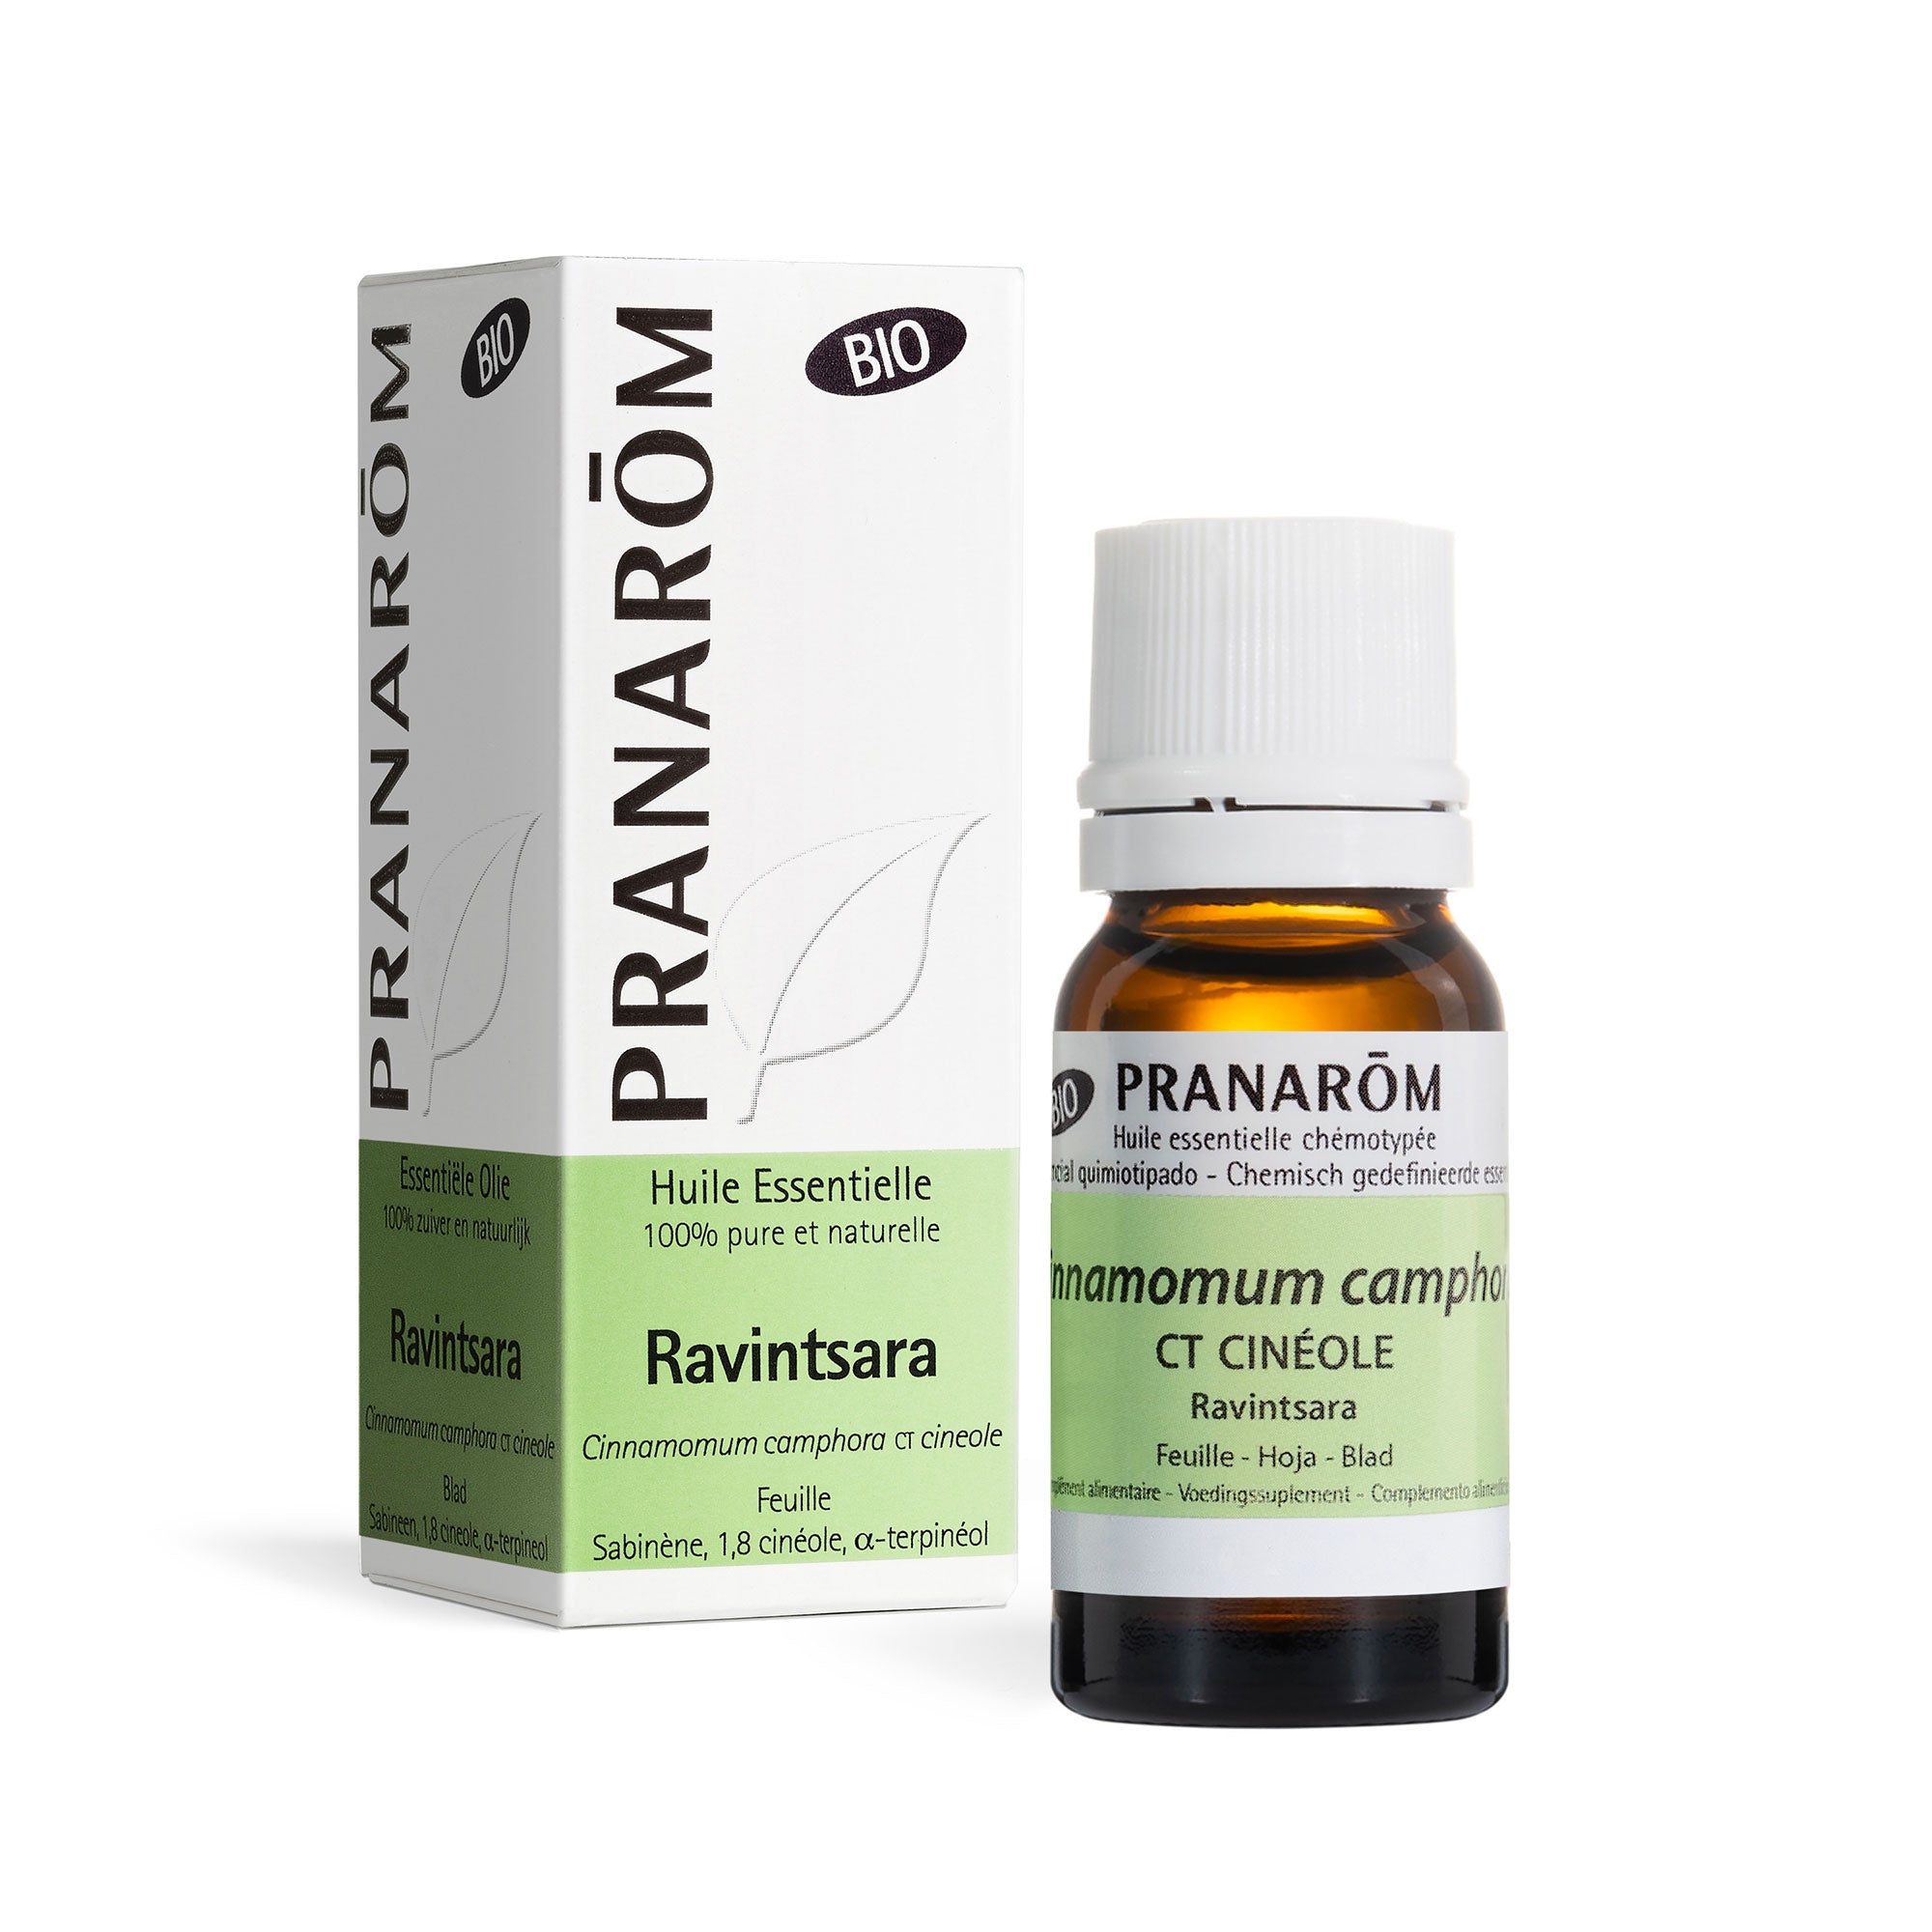 Le ravintsara, une huile essentielle pour l'hiver